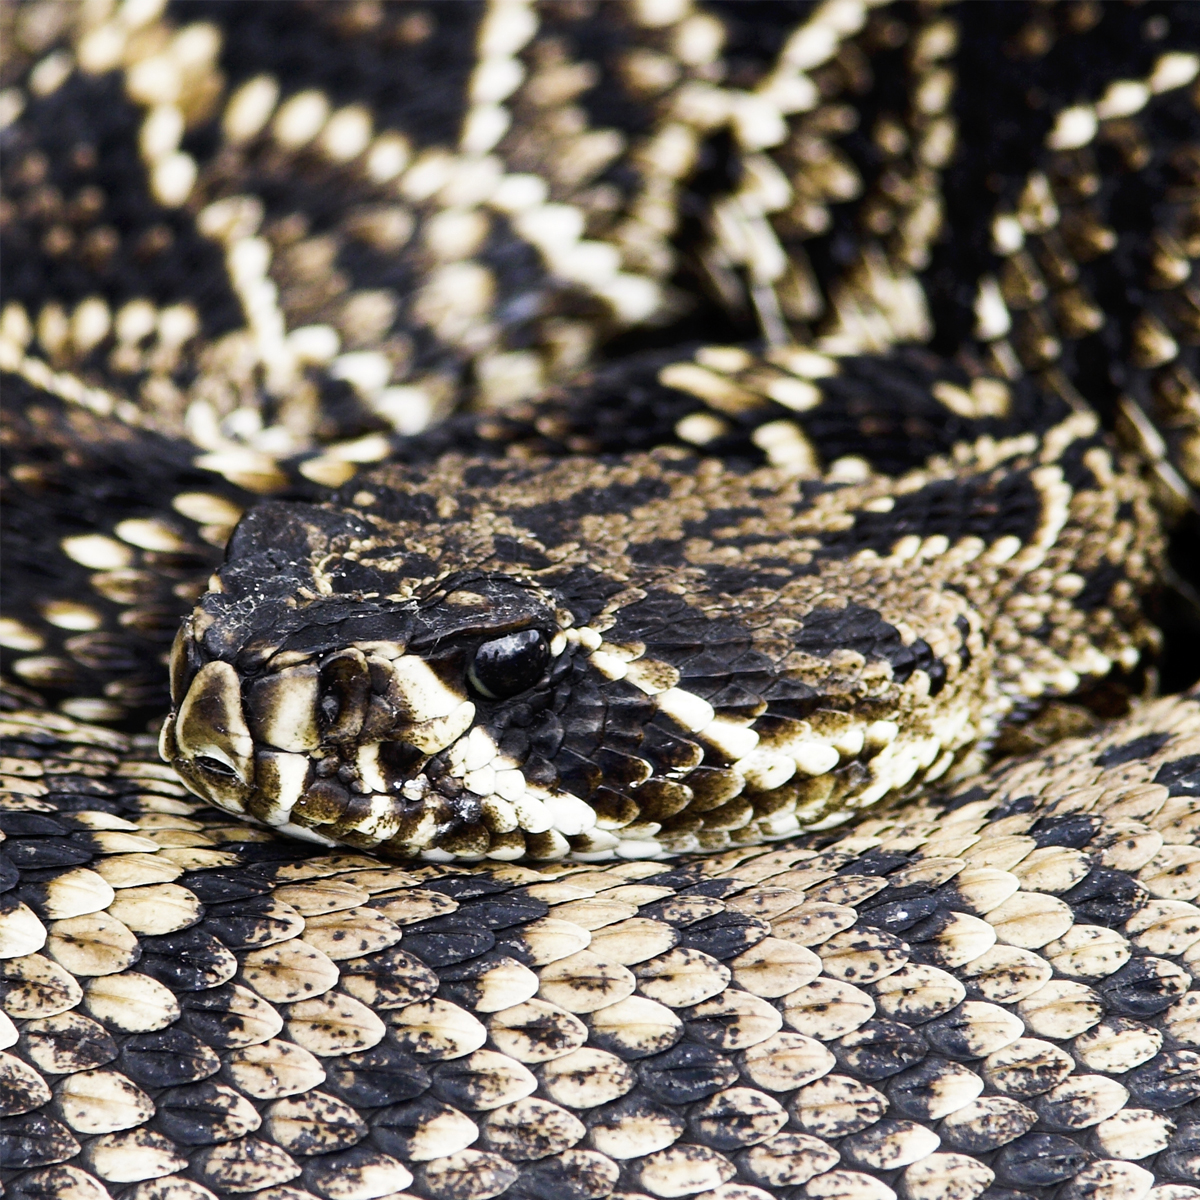 diamondback rattlesnake skin pattern